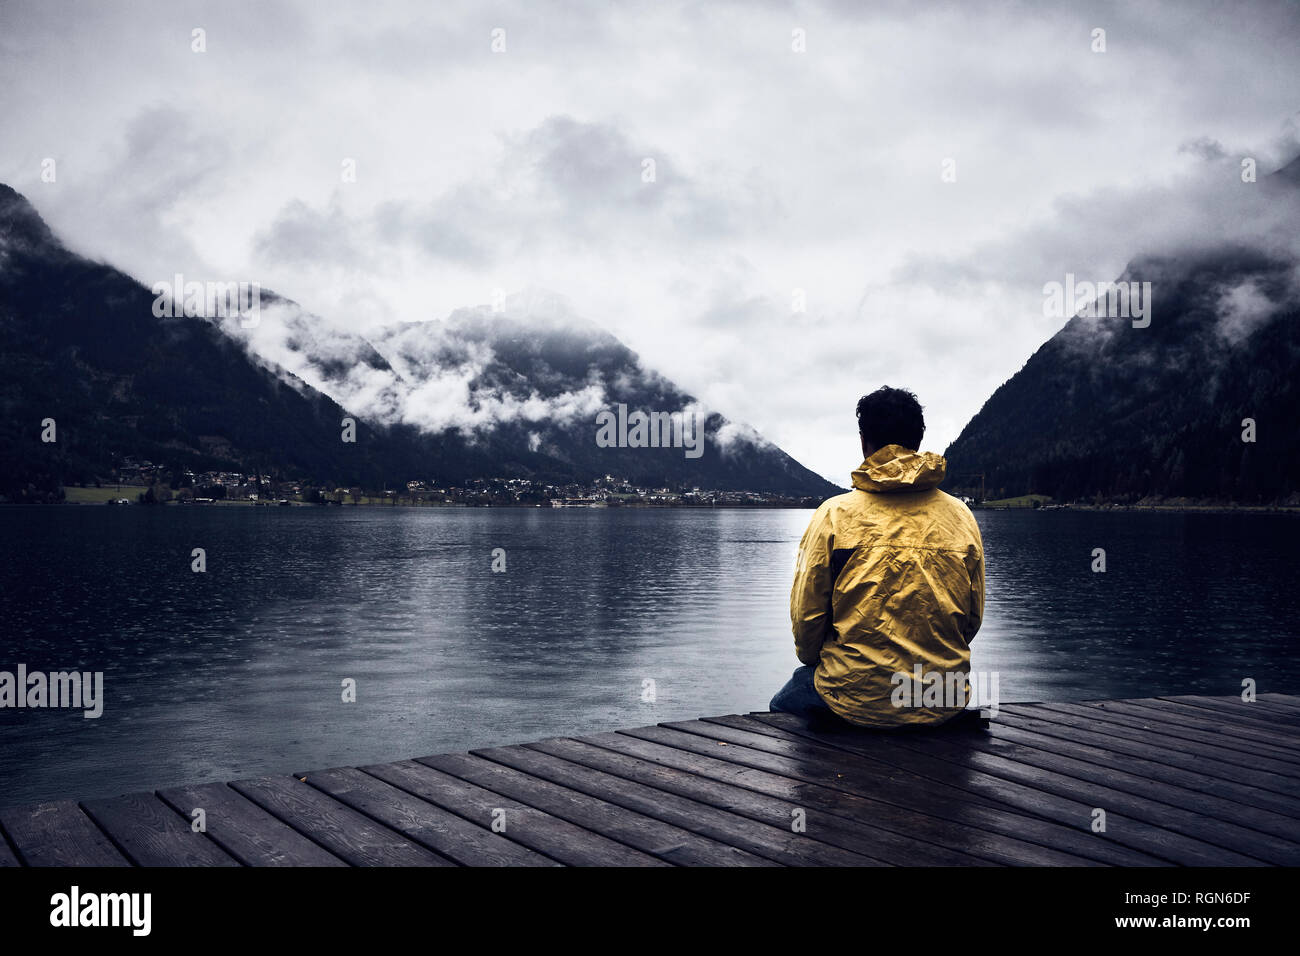 L'Autriche, le Tyrol, le lac Achen, l'homme assis sur la demande Banque D'Images